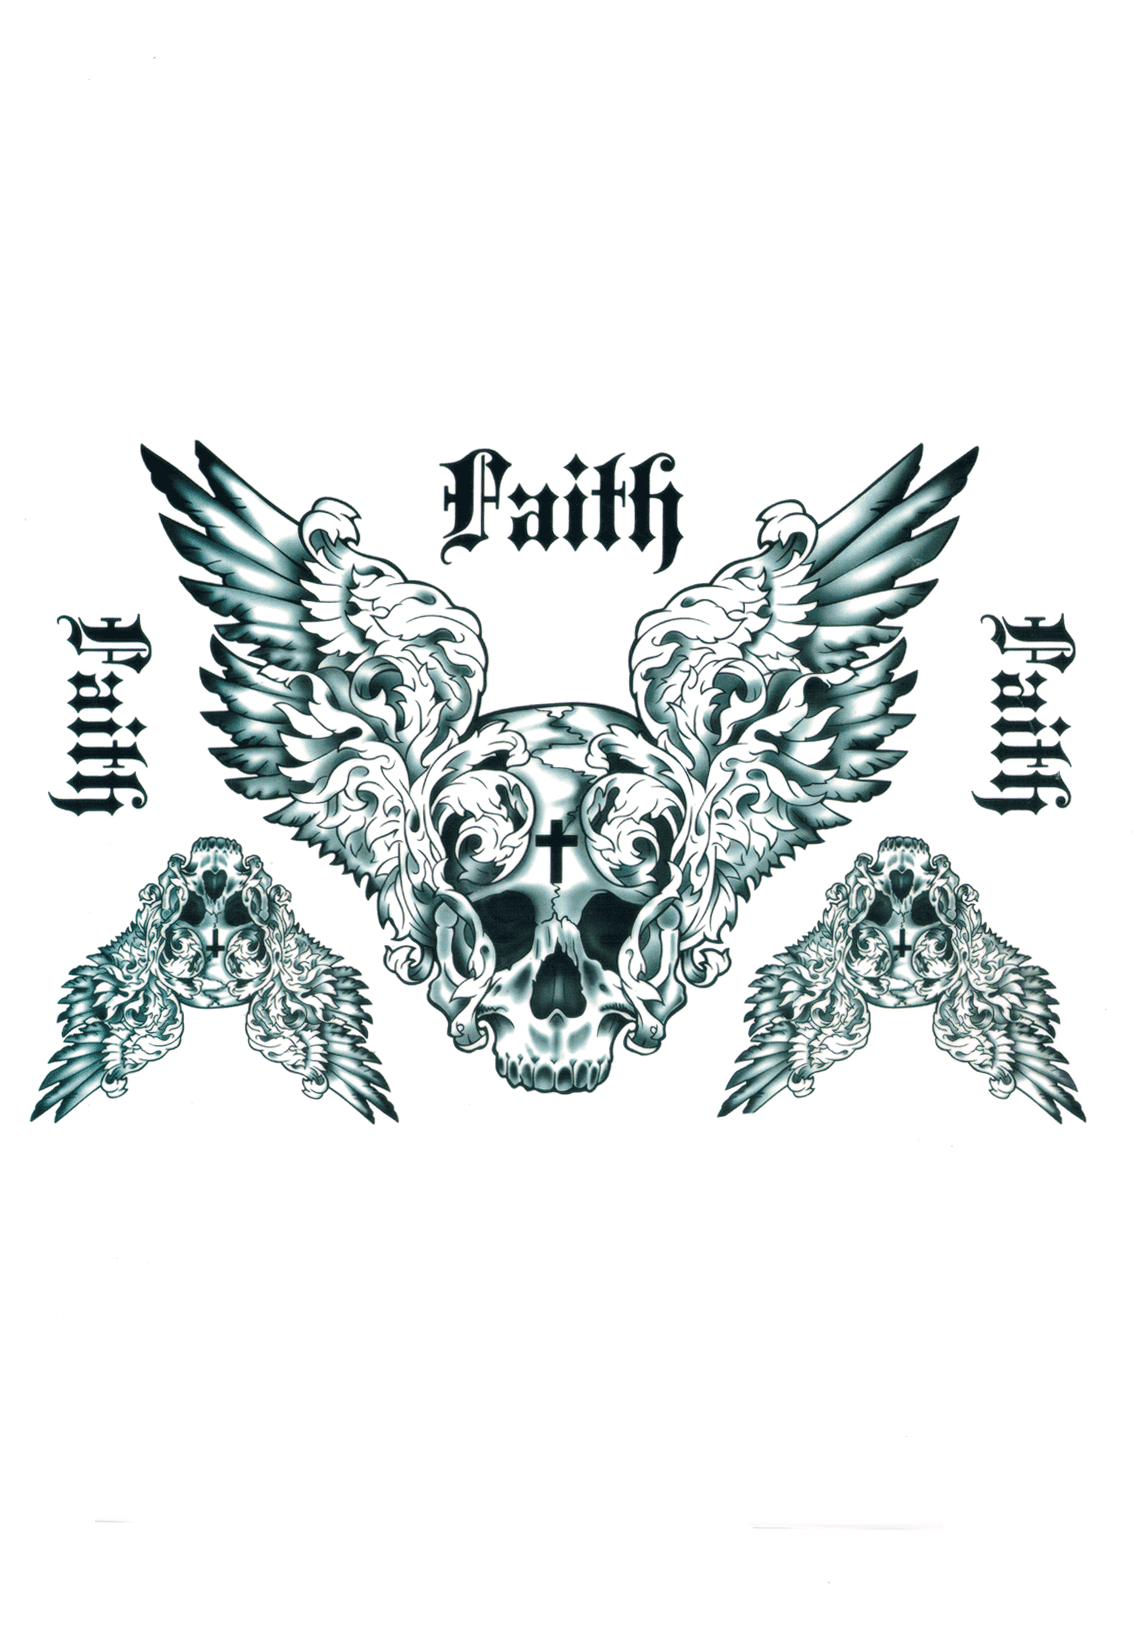 Faith ( 6 pièces )